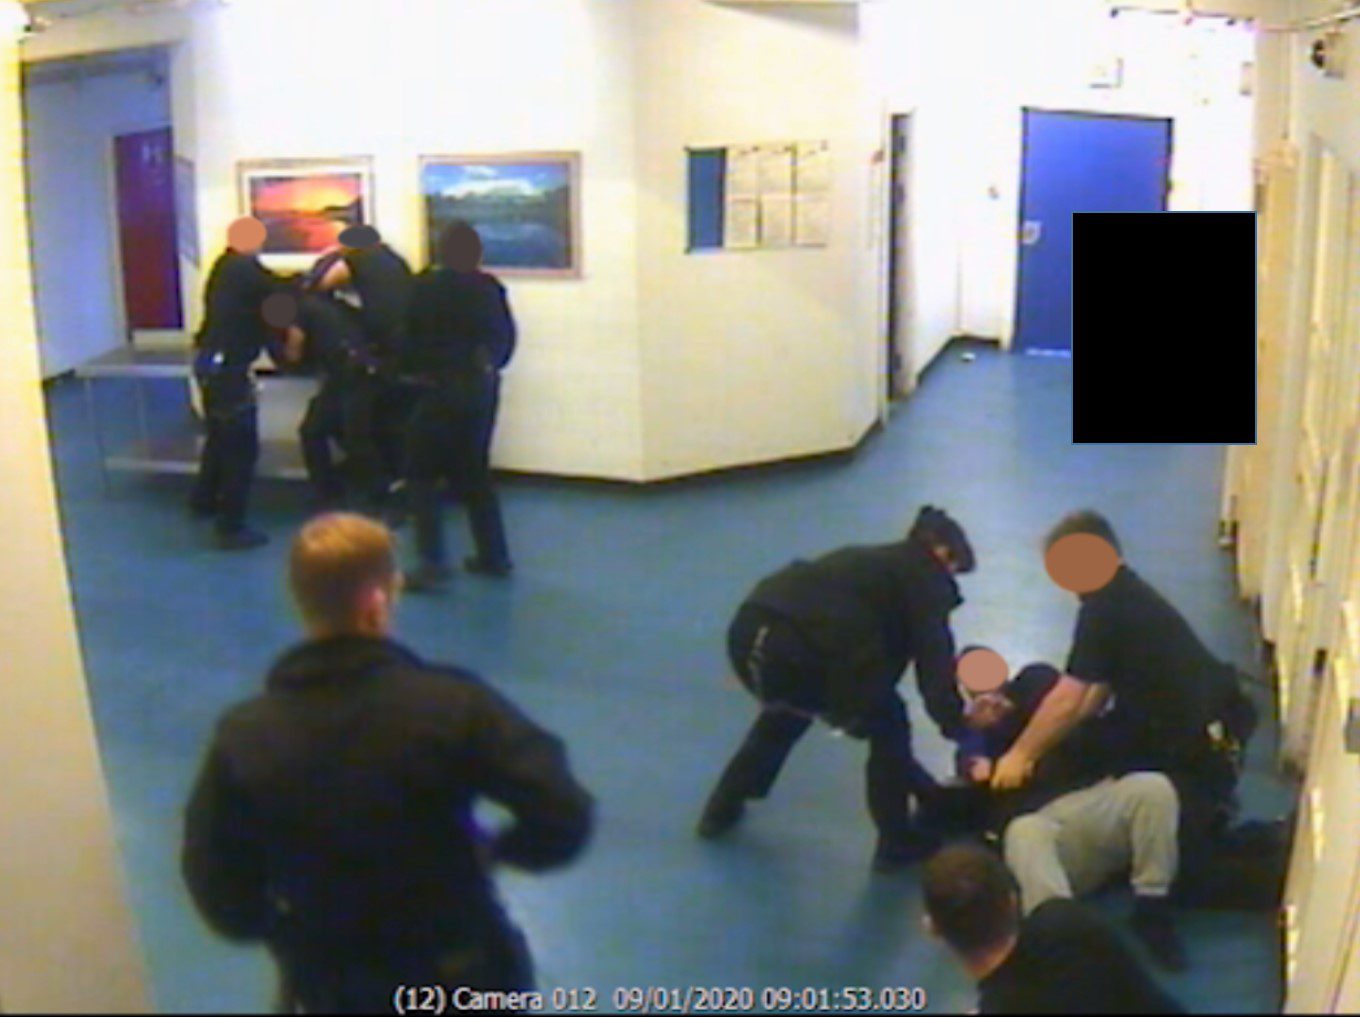 Revelan #VIDEO del ataque de reclusos a un oficial en prisión de máxima seguridad de Reino Unido